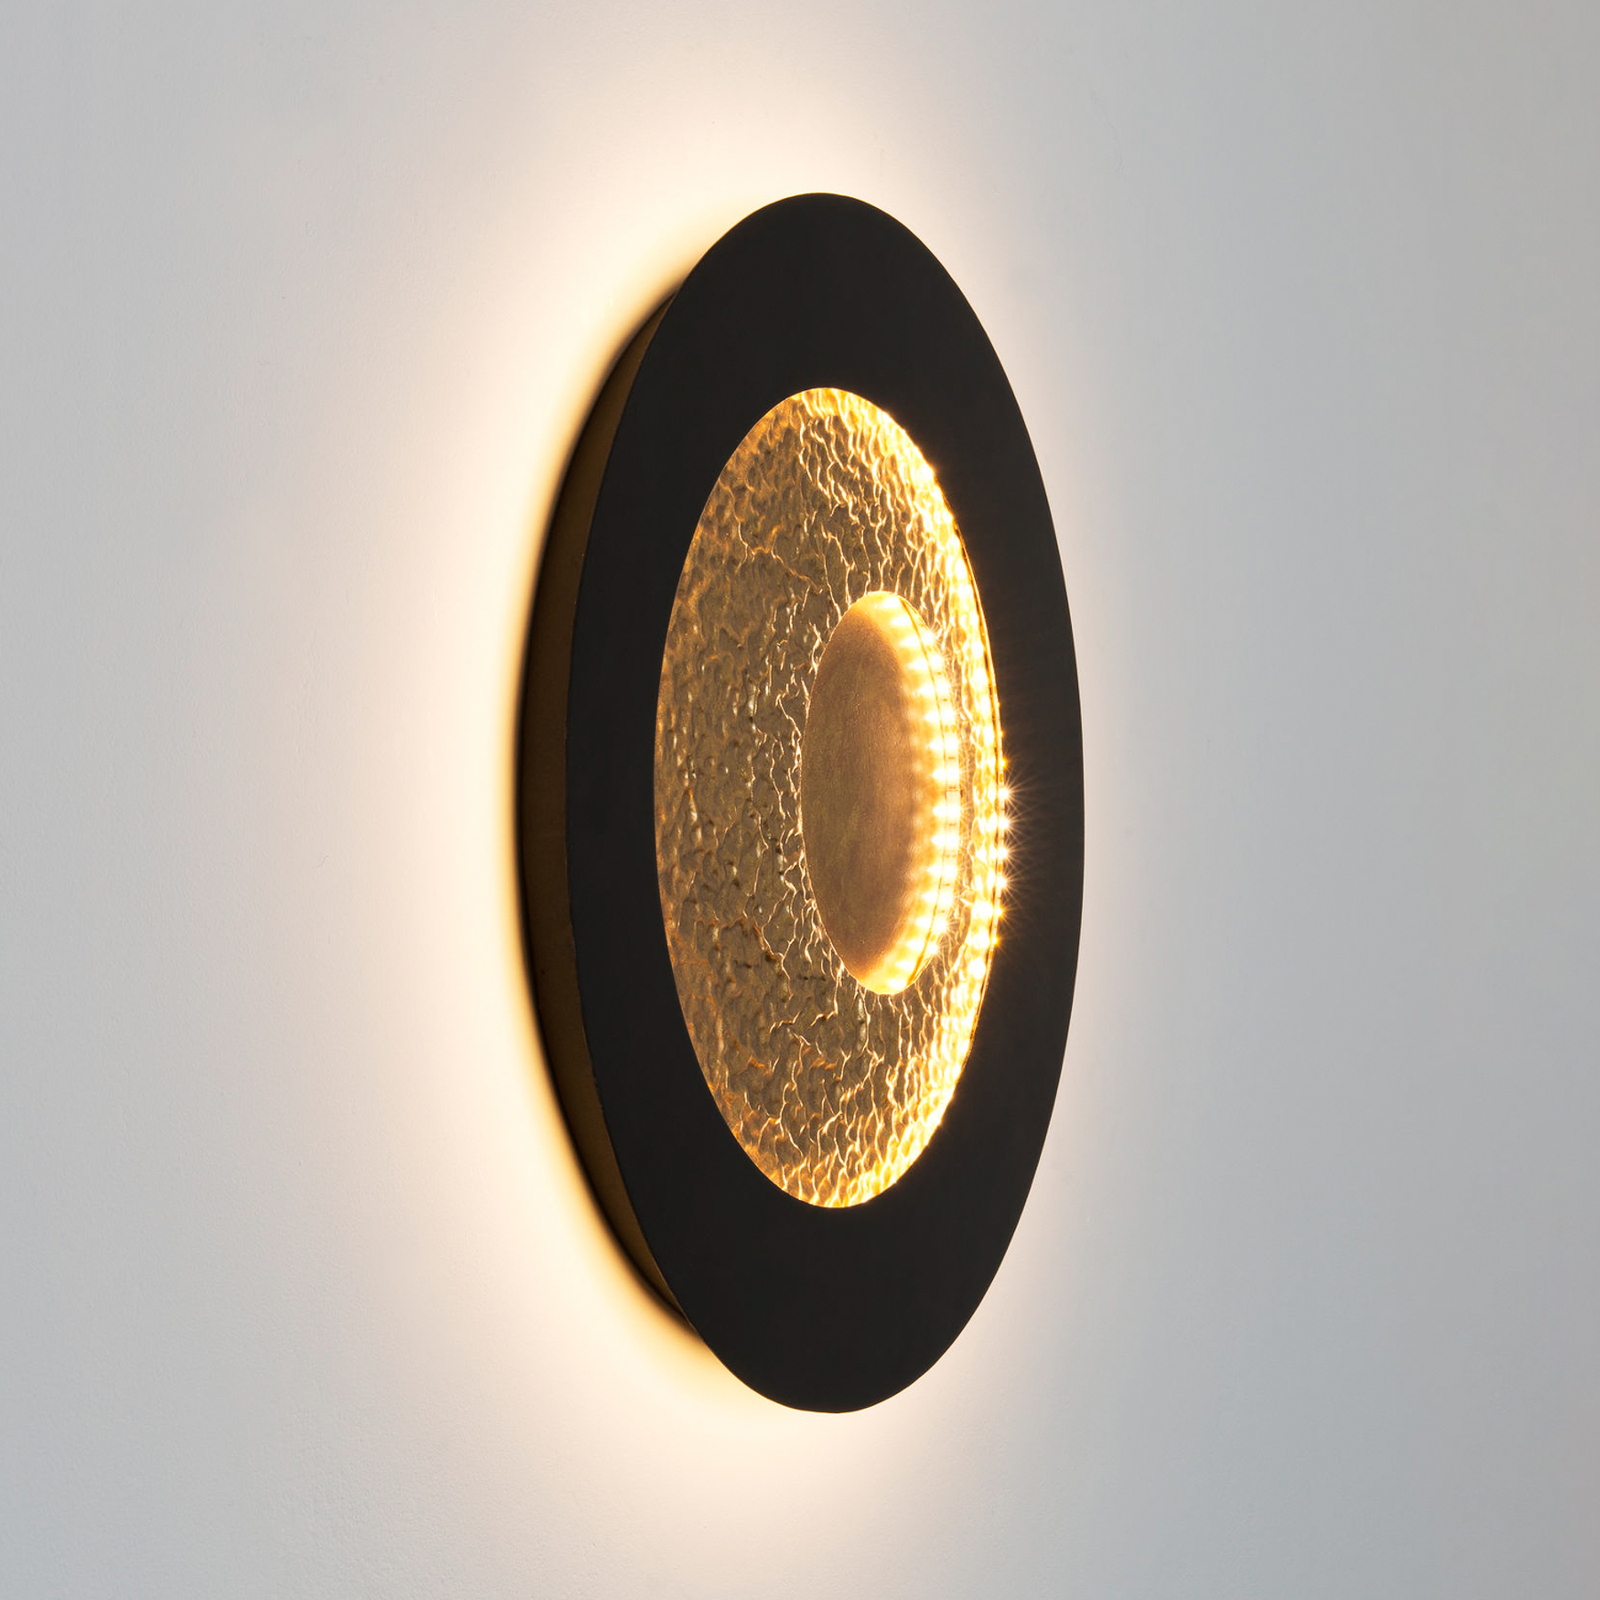 LED-Wandleuchte Urano, braun-schwarz/gold, Ø 60 cm, Eisen